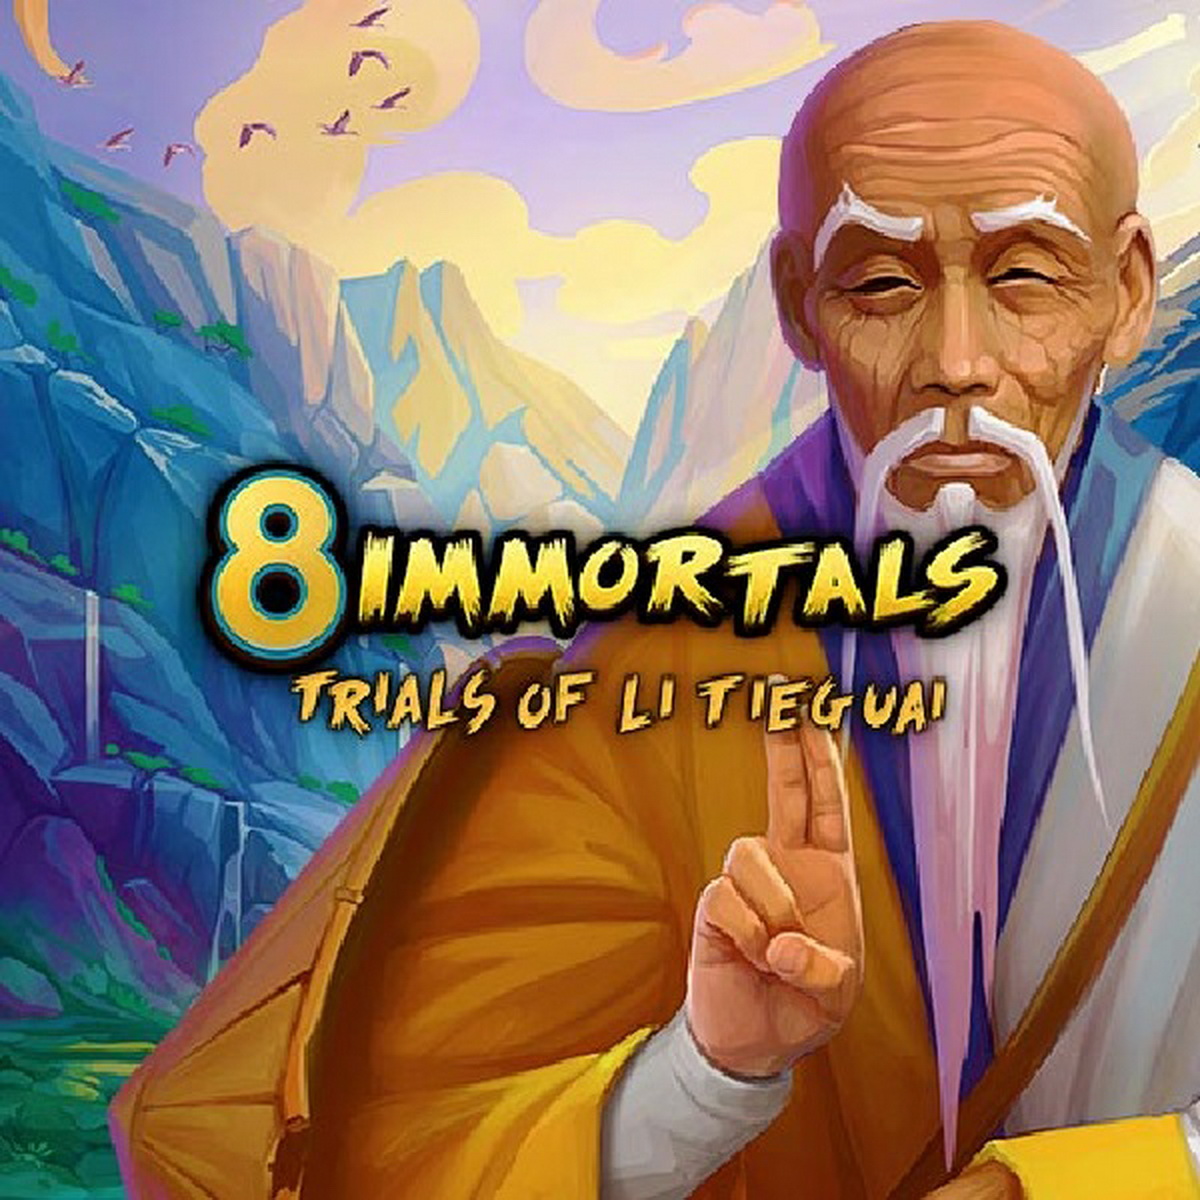 8 Immortals Trials of Li Tieguai demo